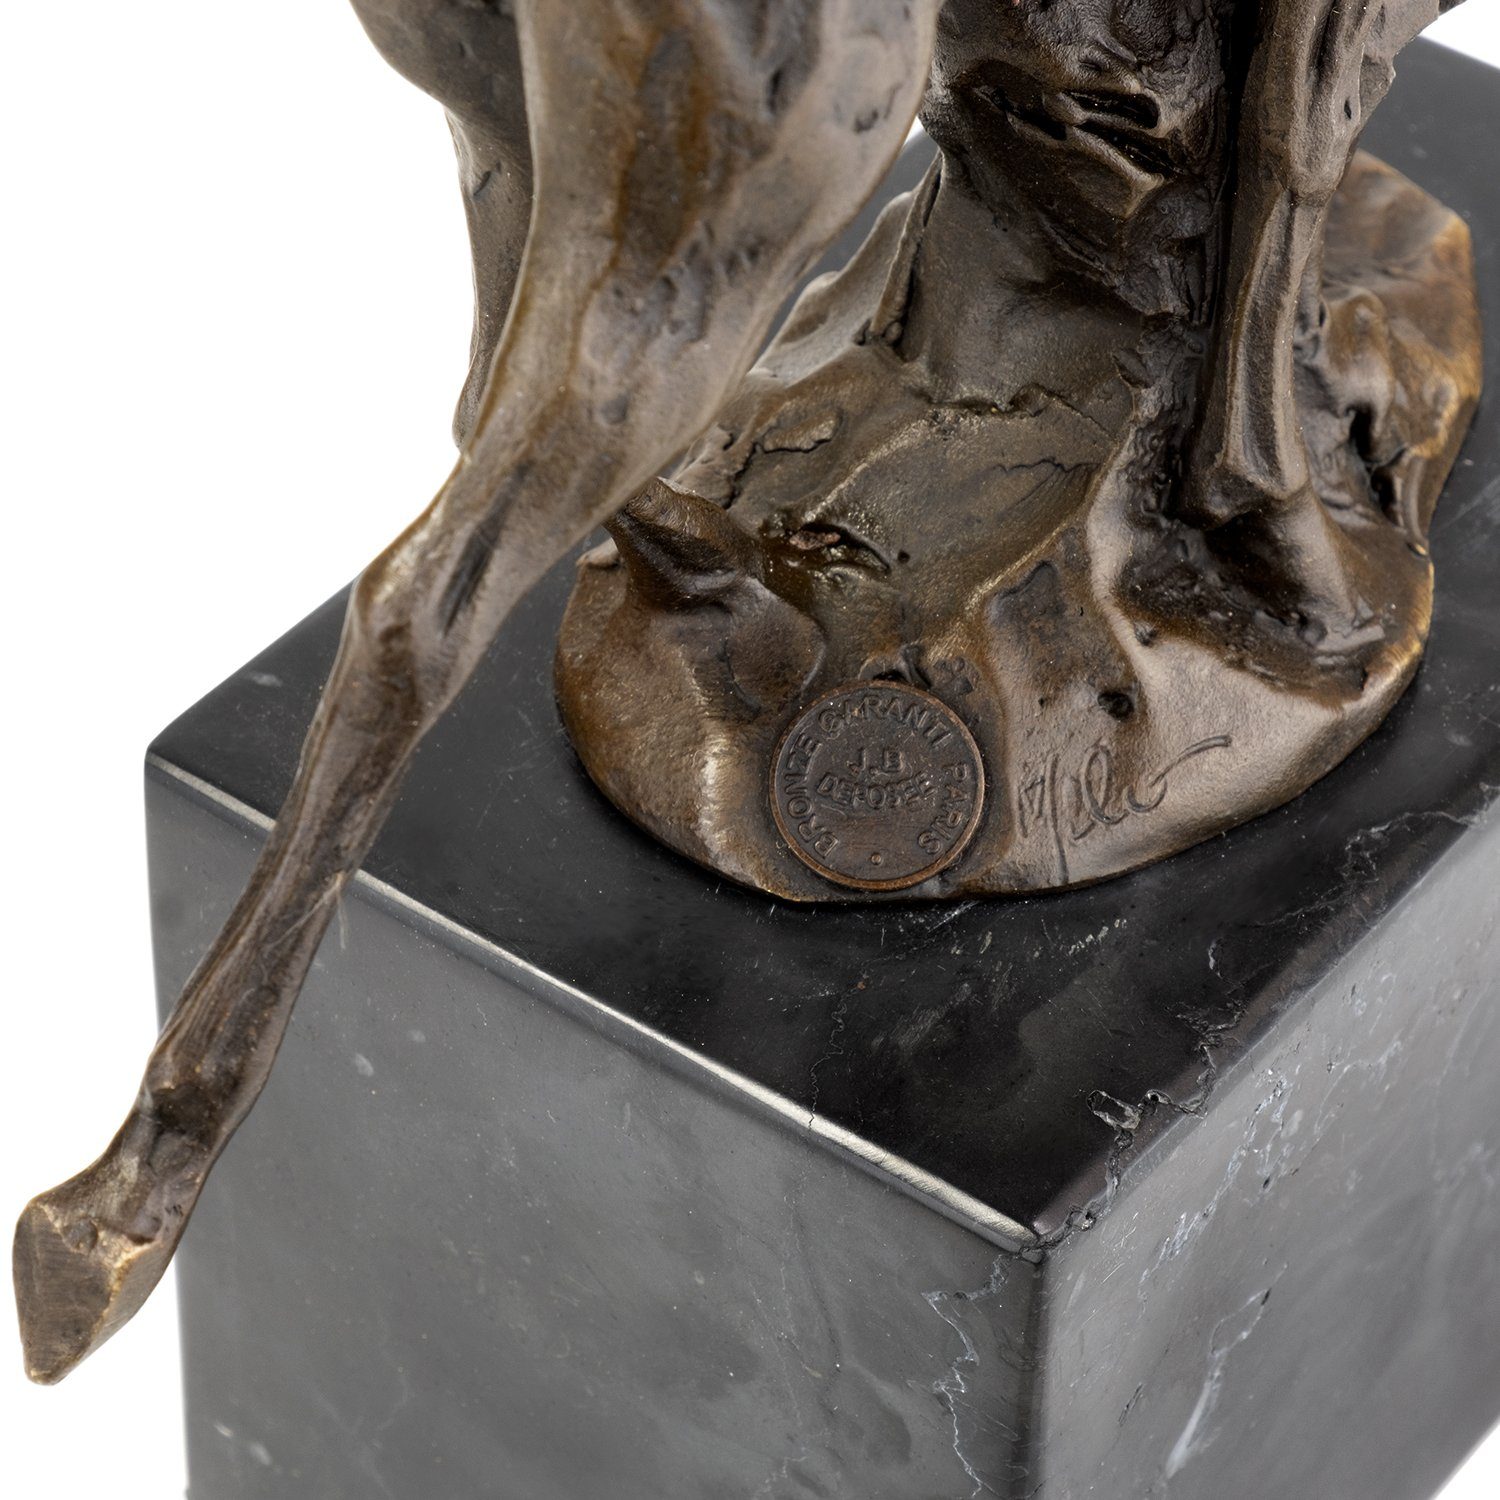 Rotwild, Moritz für Deko Bronzefigur Schreibtisch Figuren Bronzefigur Skulptur Vitrine Regal Skulptur